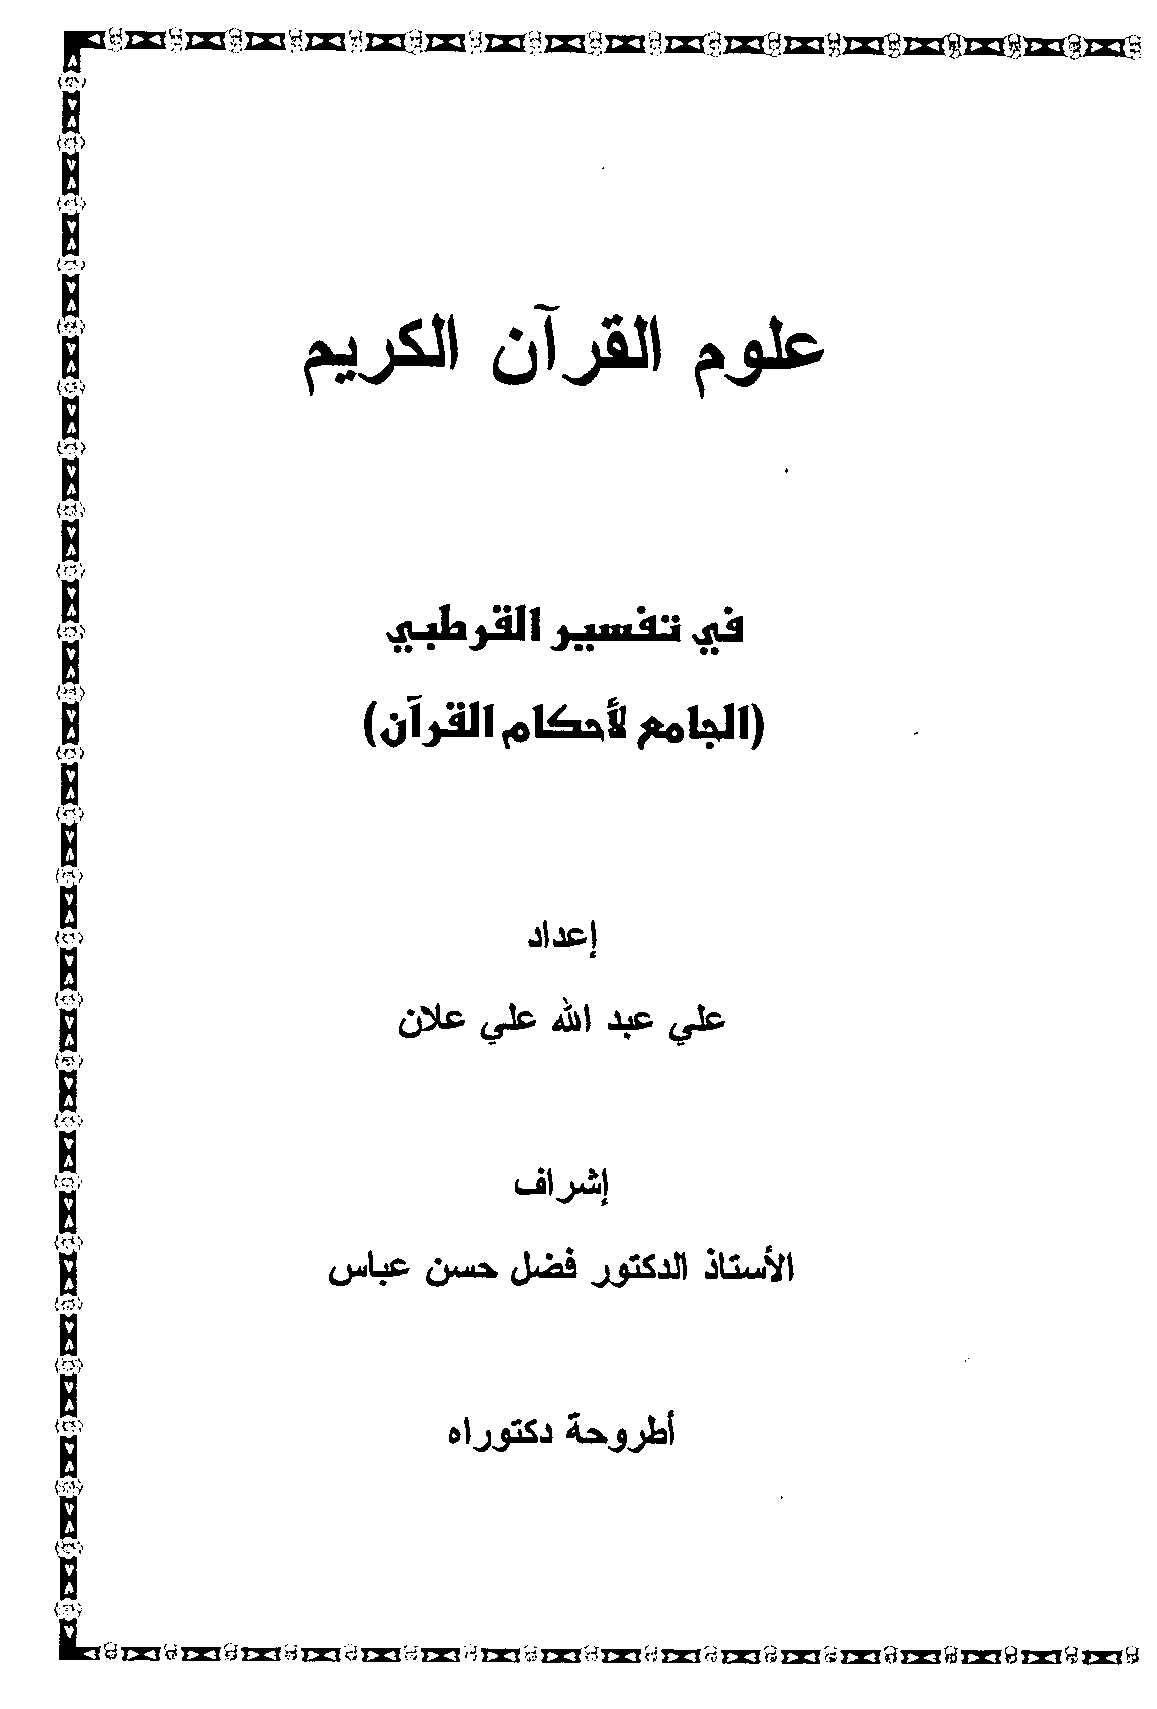 تحميل كتاب علوم القرآن في تفسير القرطبي «الجامع لأحكام القرآن» لـِ: الدكتور علي عبد الله علي علان